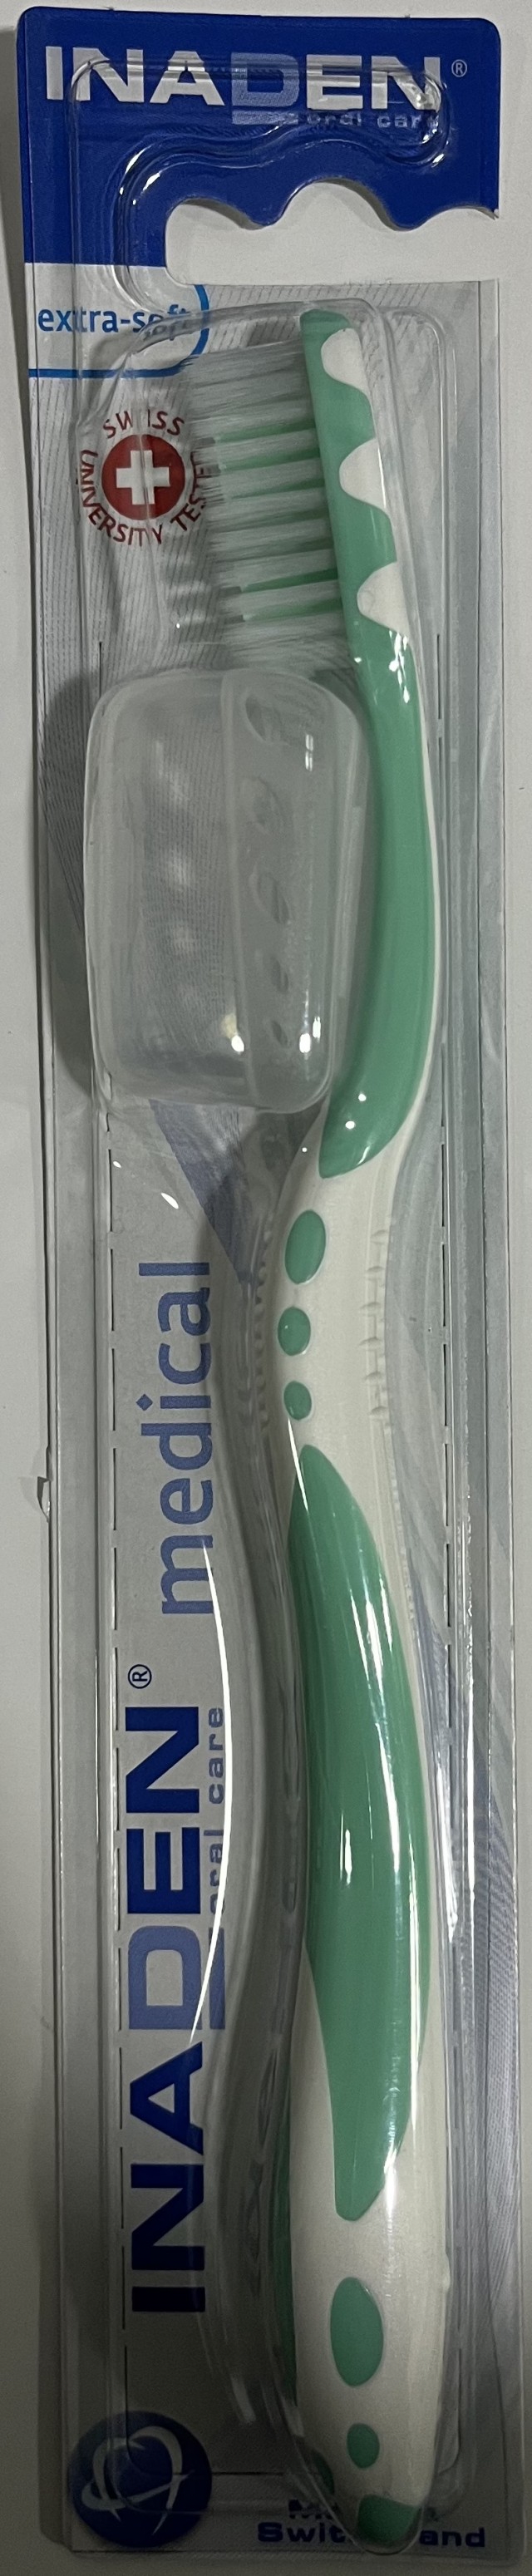 Inaden Οδοντόβουρτσα Medical Extra-Soft Χρώμα Πράσινο, 1τμχ